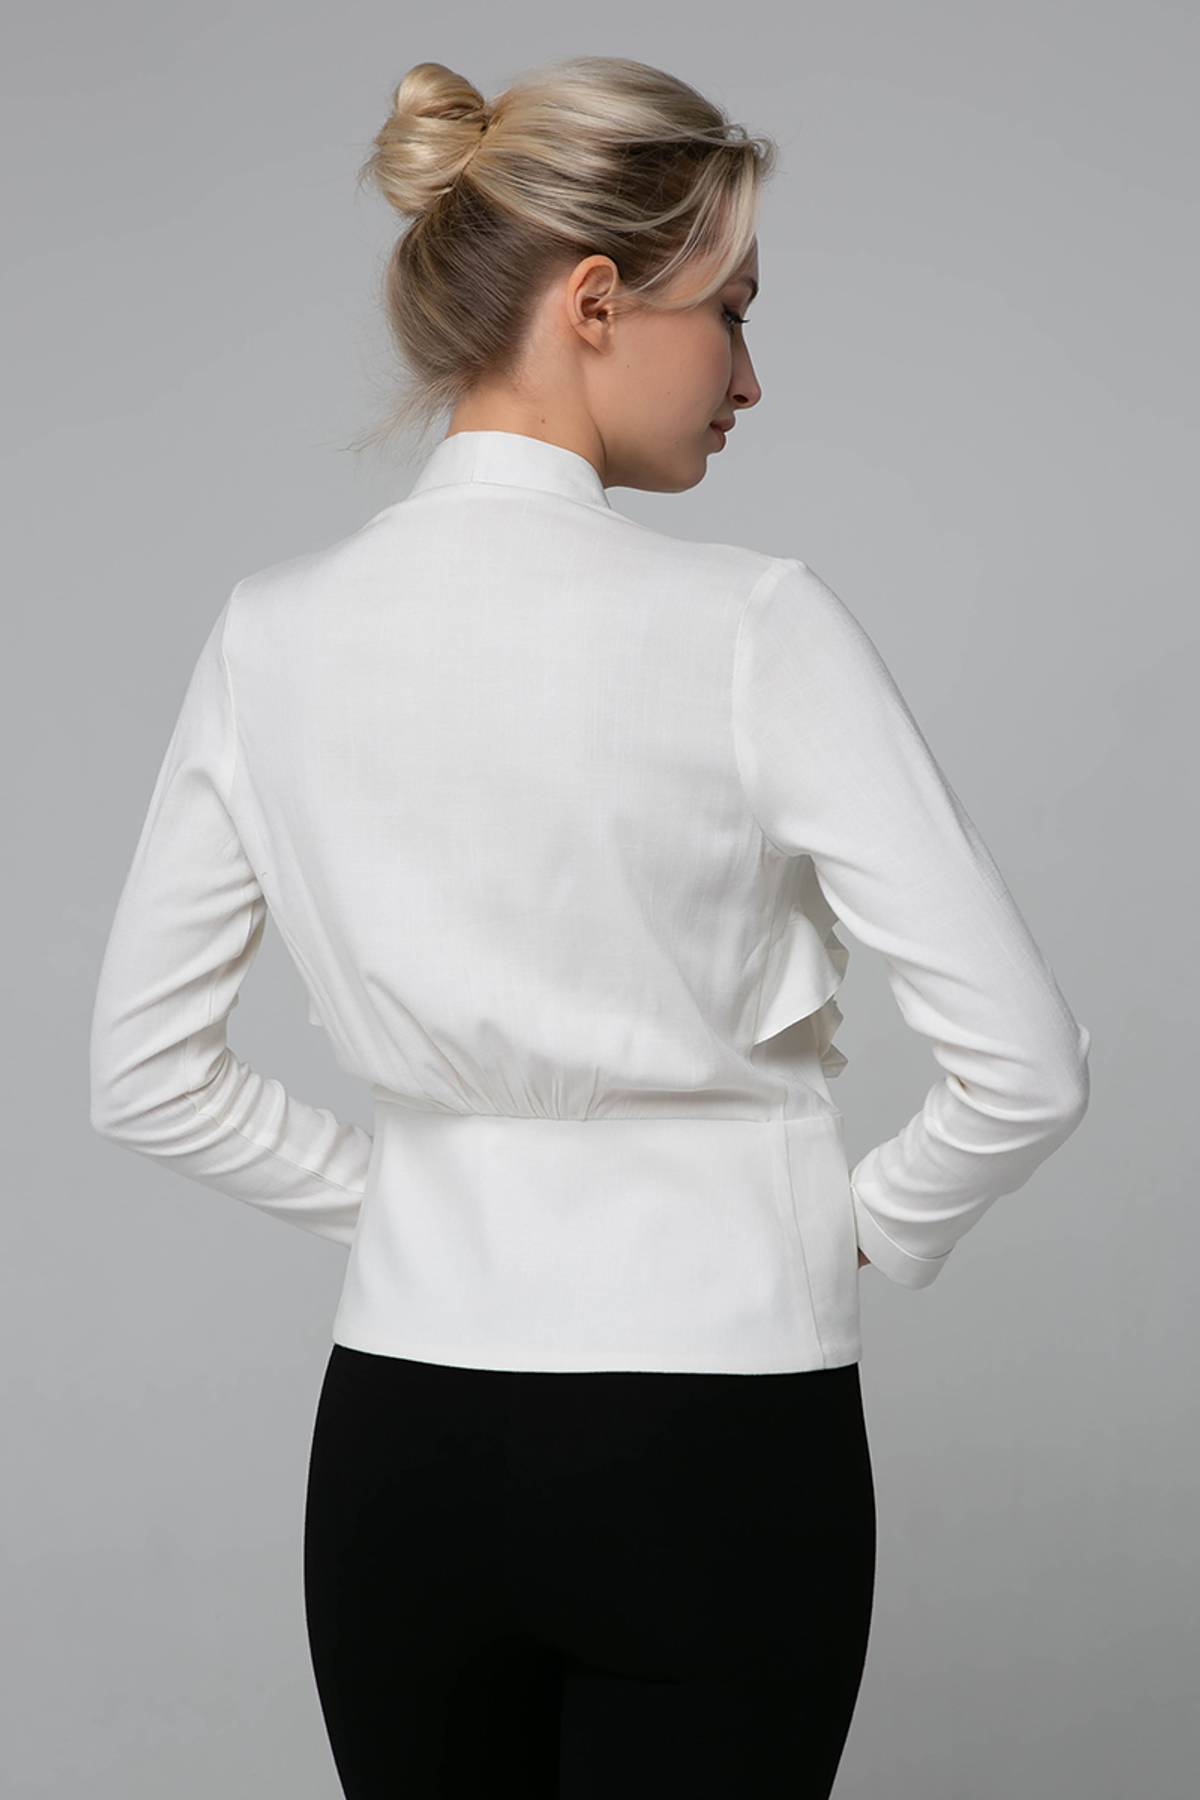 Короткая блуза со вставками из кружева